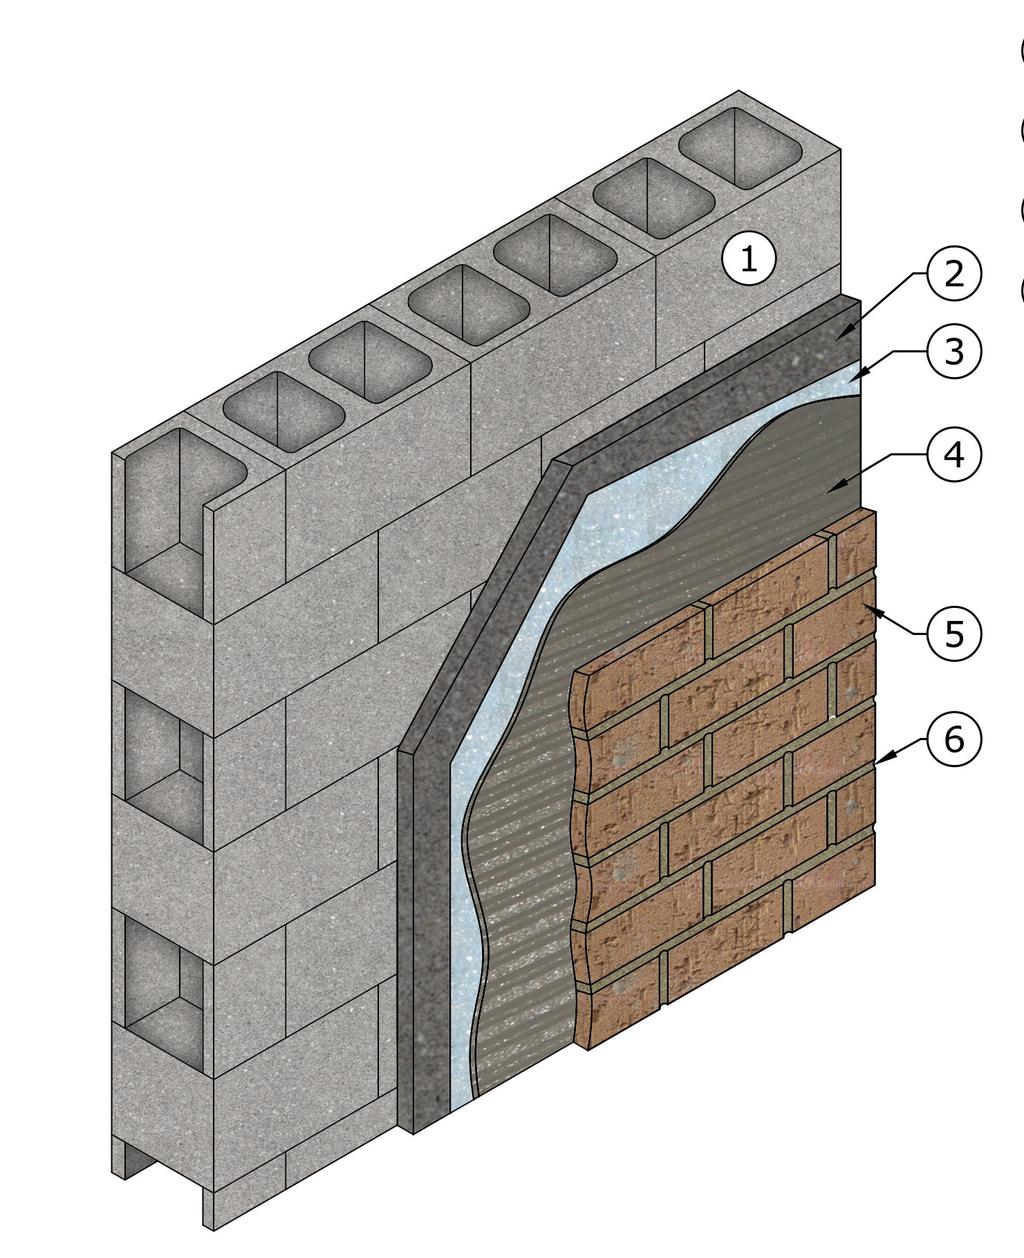 THIN-STONE VENEER INSTALLATION OVER CONCRETE SUBSTRATE Concrete Masonry Units (CMU) Umaco U-Trowel Basecoat Umaco Xtreme Weather-Block (roll-on or spray weather-resistive membrane) Umaco Xtreme-Bond